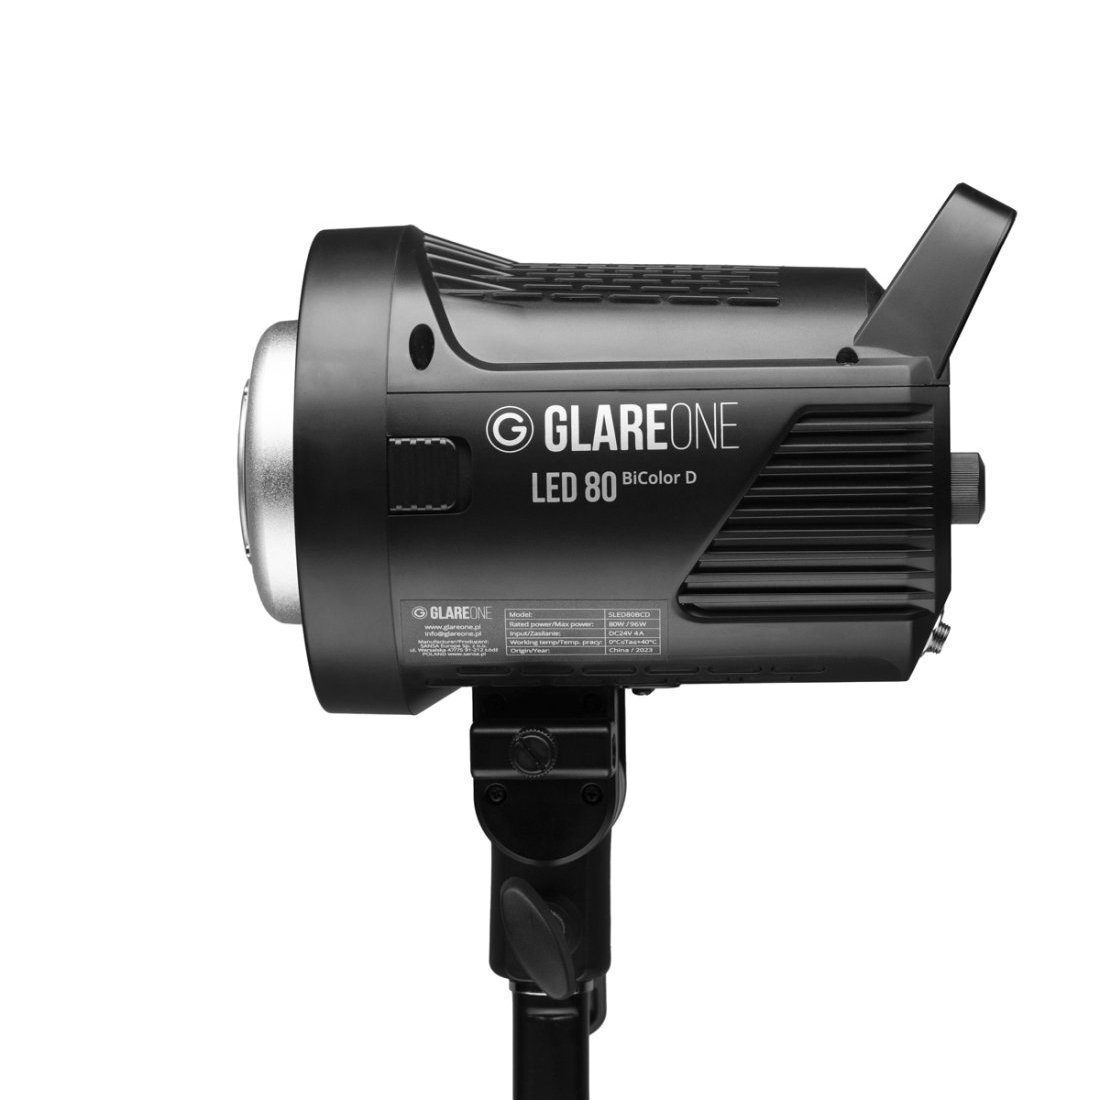 GlareOne GlareOne LED 80 BiColor D LED-lamp Location Kit